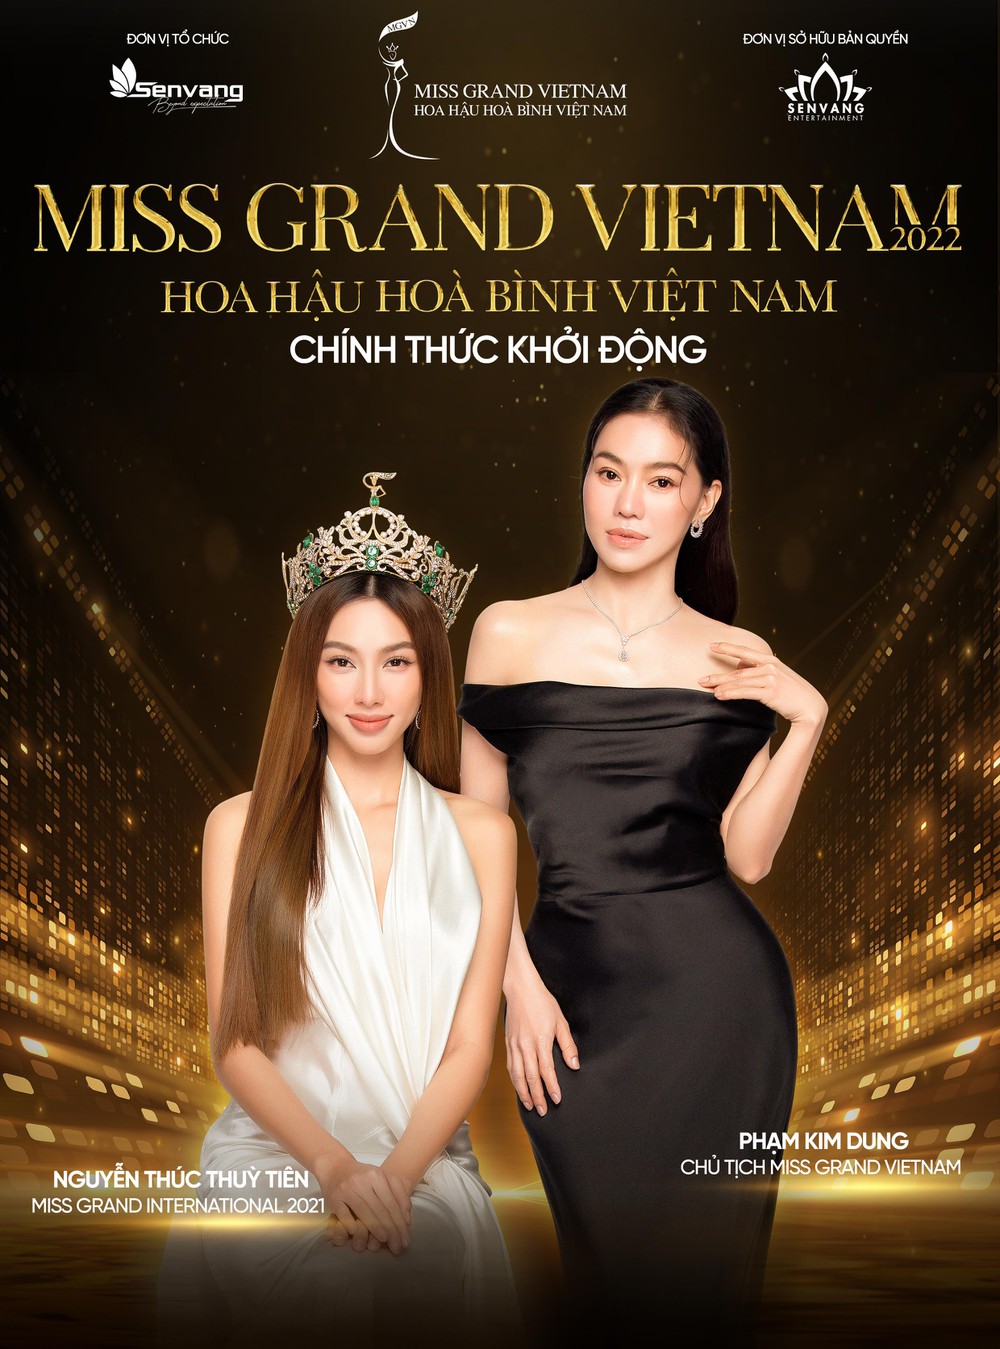 Sau thành công của Thùy Tiên, Miss Grand Việt Nam sẽ lần đầu được tổ chức trong năm 2022